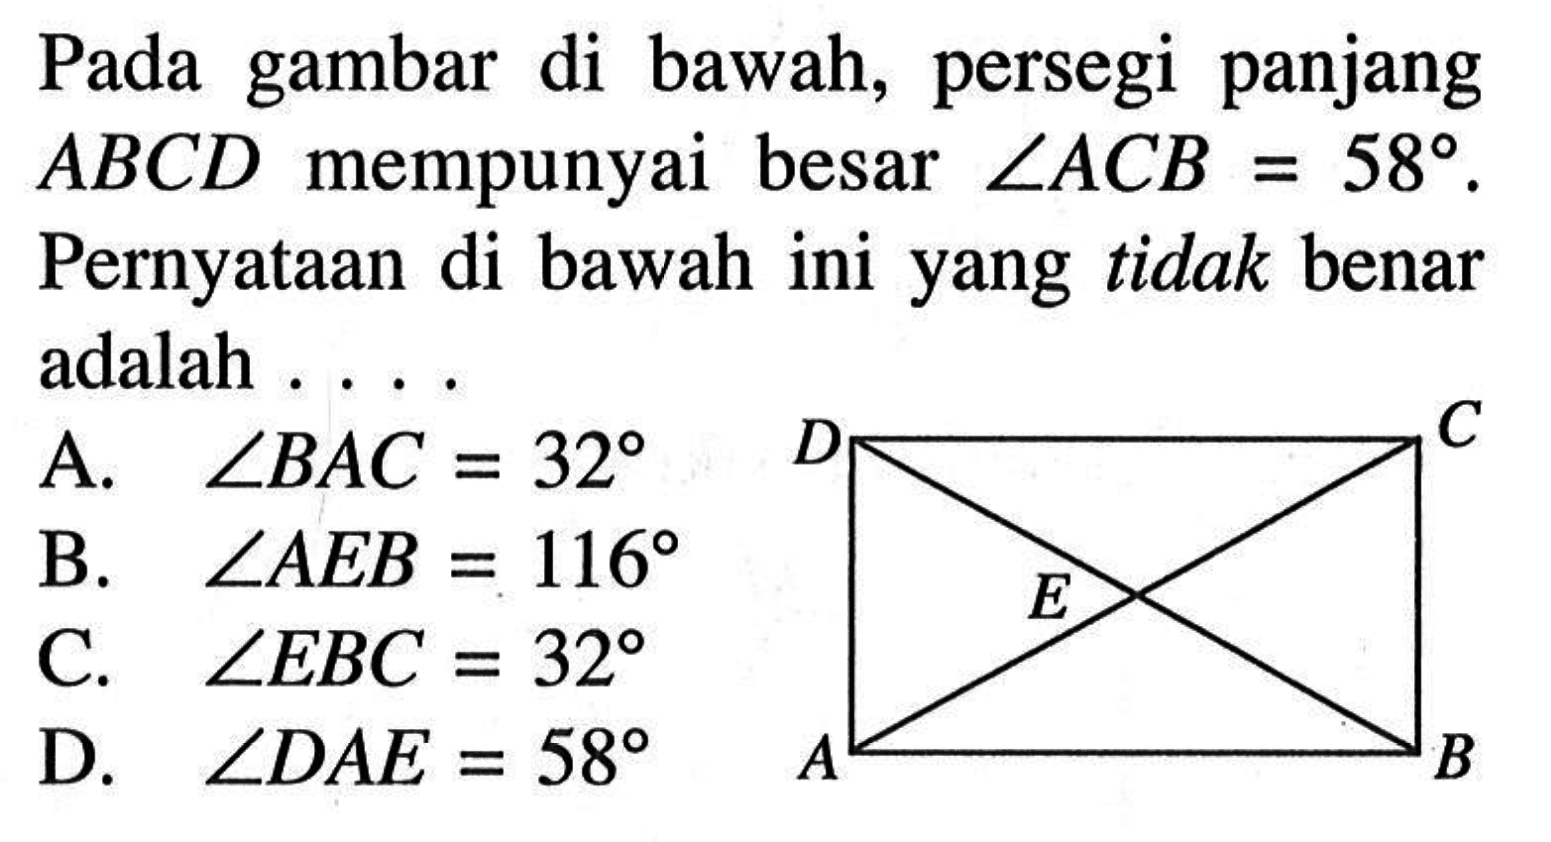 Pada gambar di bawah, persegi panjang  ABCD  mempunyai besar  sudut ACB=58 . Pernyataan di bawah ini yang tidak benar adalah ... .